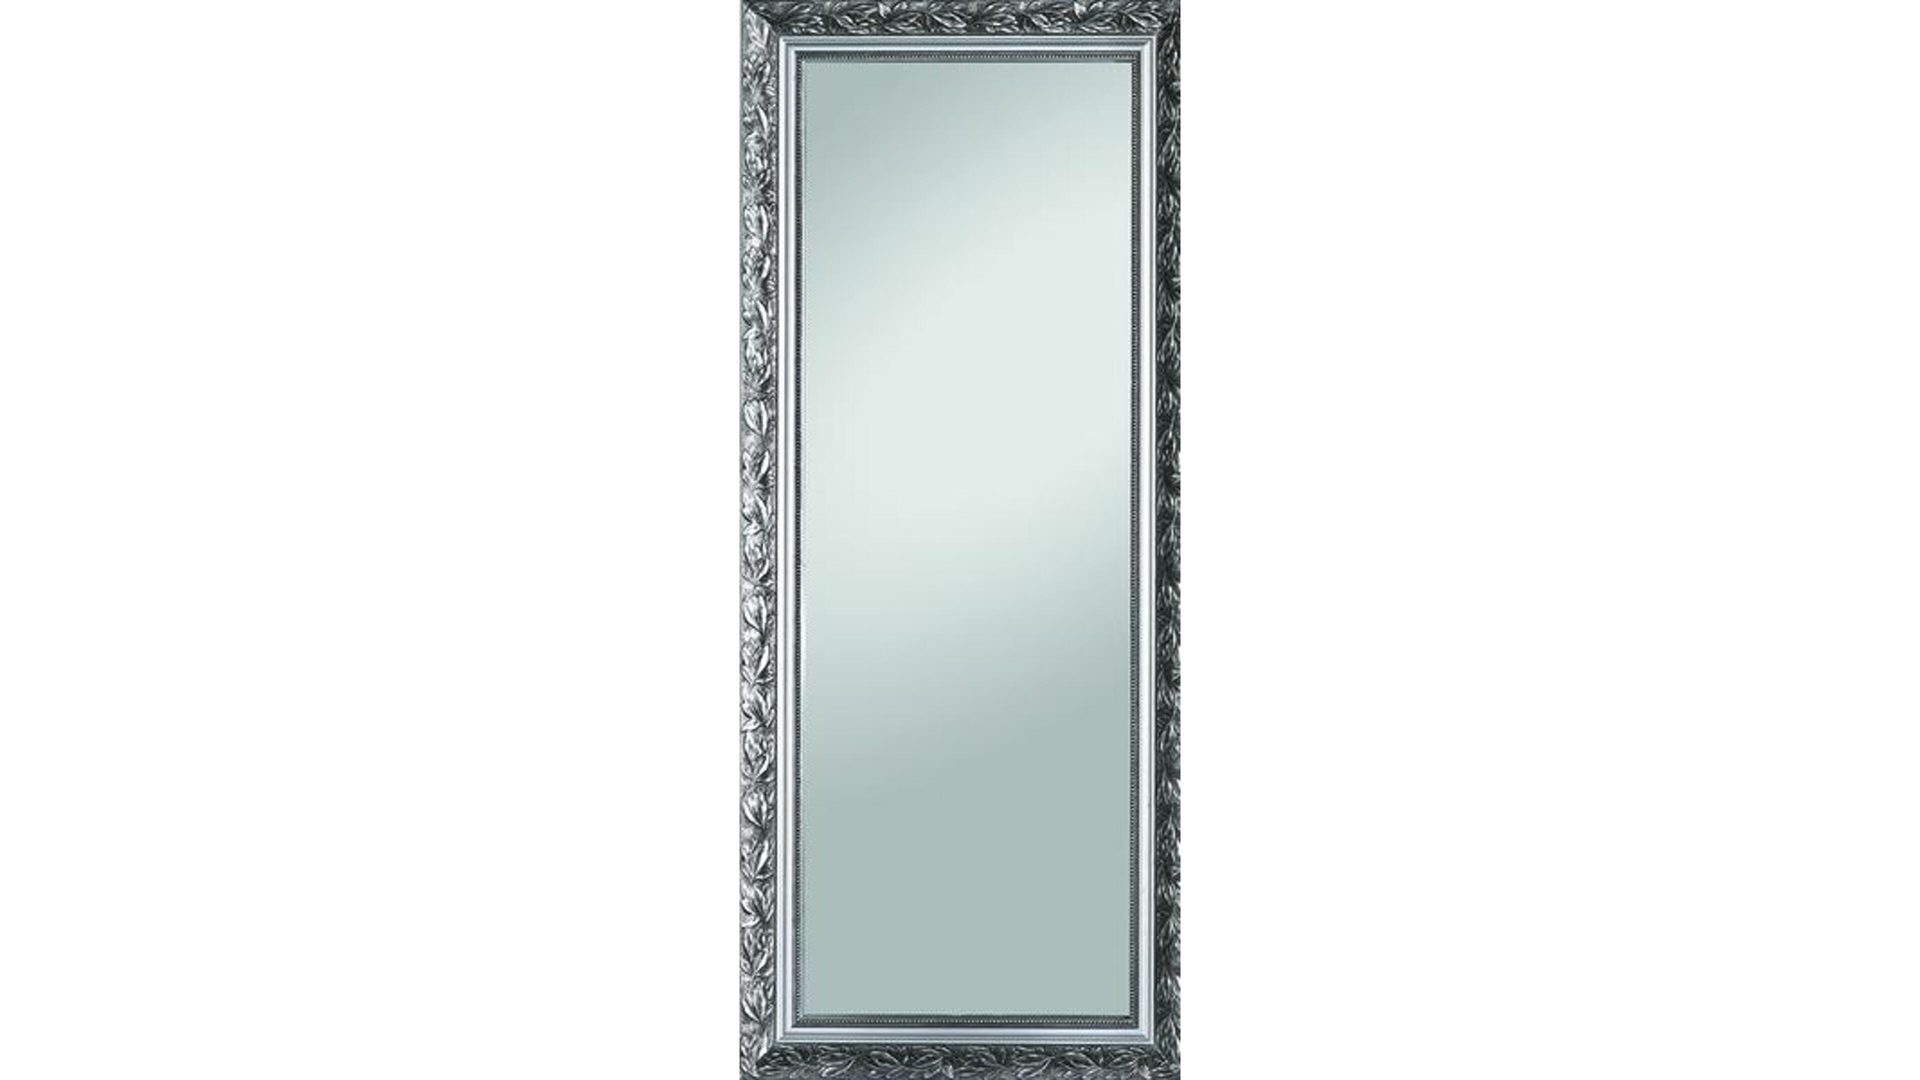 Wandspiegel Spiegelprofi aus Spiegel in Metallfarben Rahmenspiegel silberfarbener Holzrahmen – ca. 46 x 111 cm